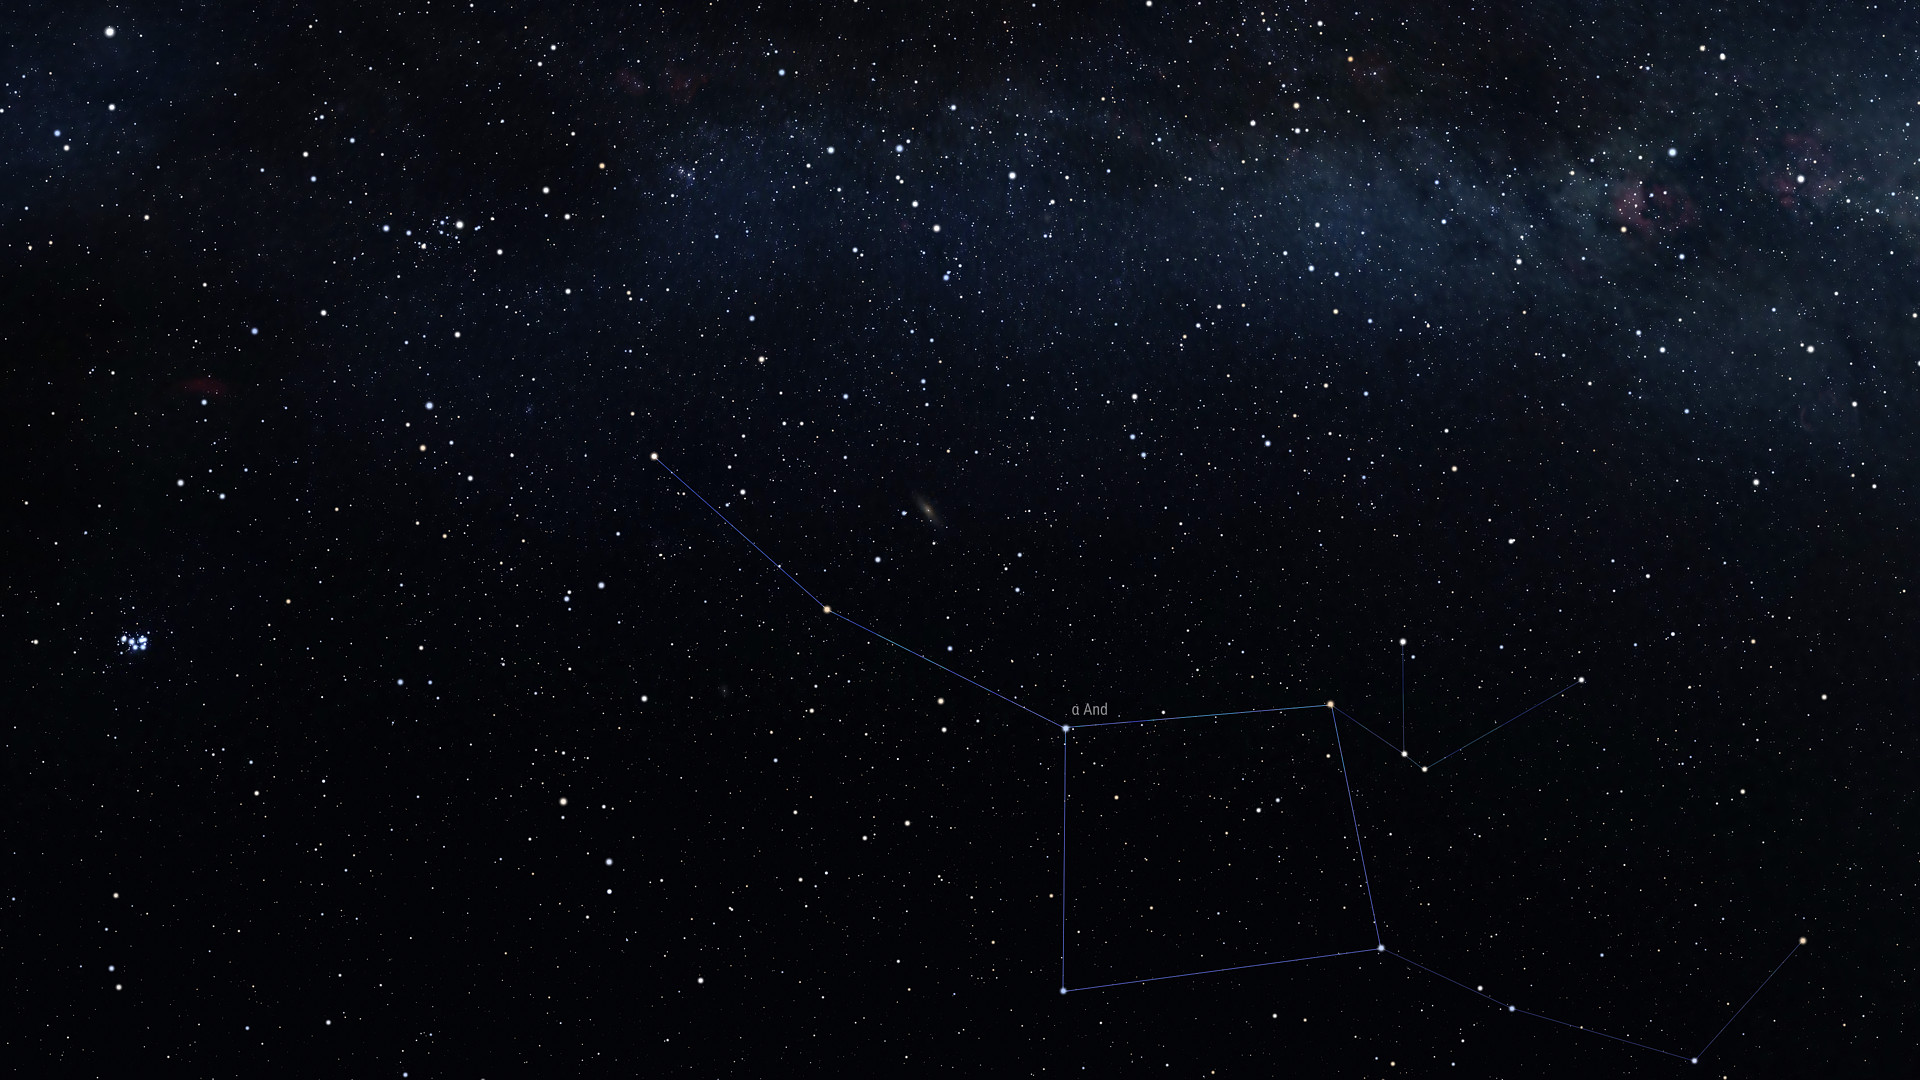 Созвездия Андромеды и Пегаса, всегда изображаемые на звездных картах слитно. А соединяет их звезда Альфа Андромеда - Альферац. Она же известна как Дельта Пегаса  